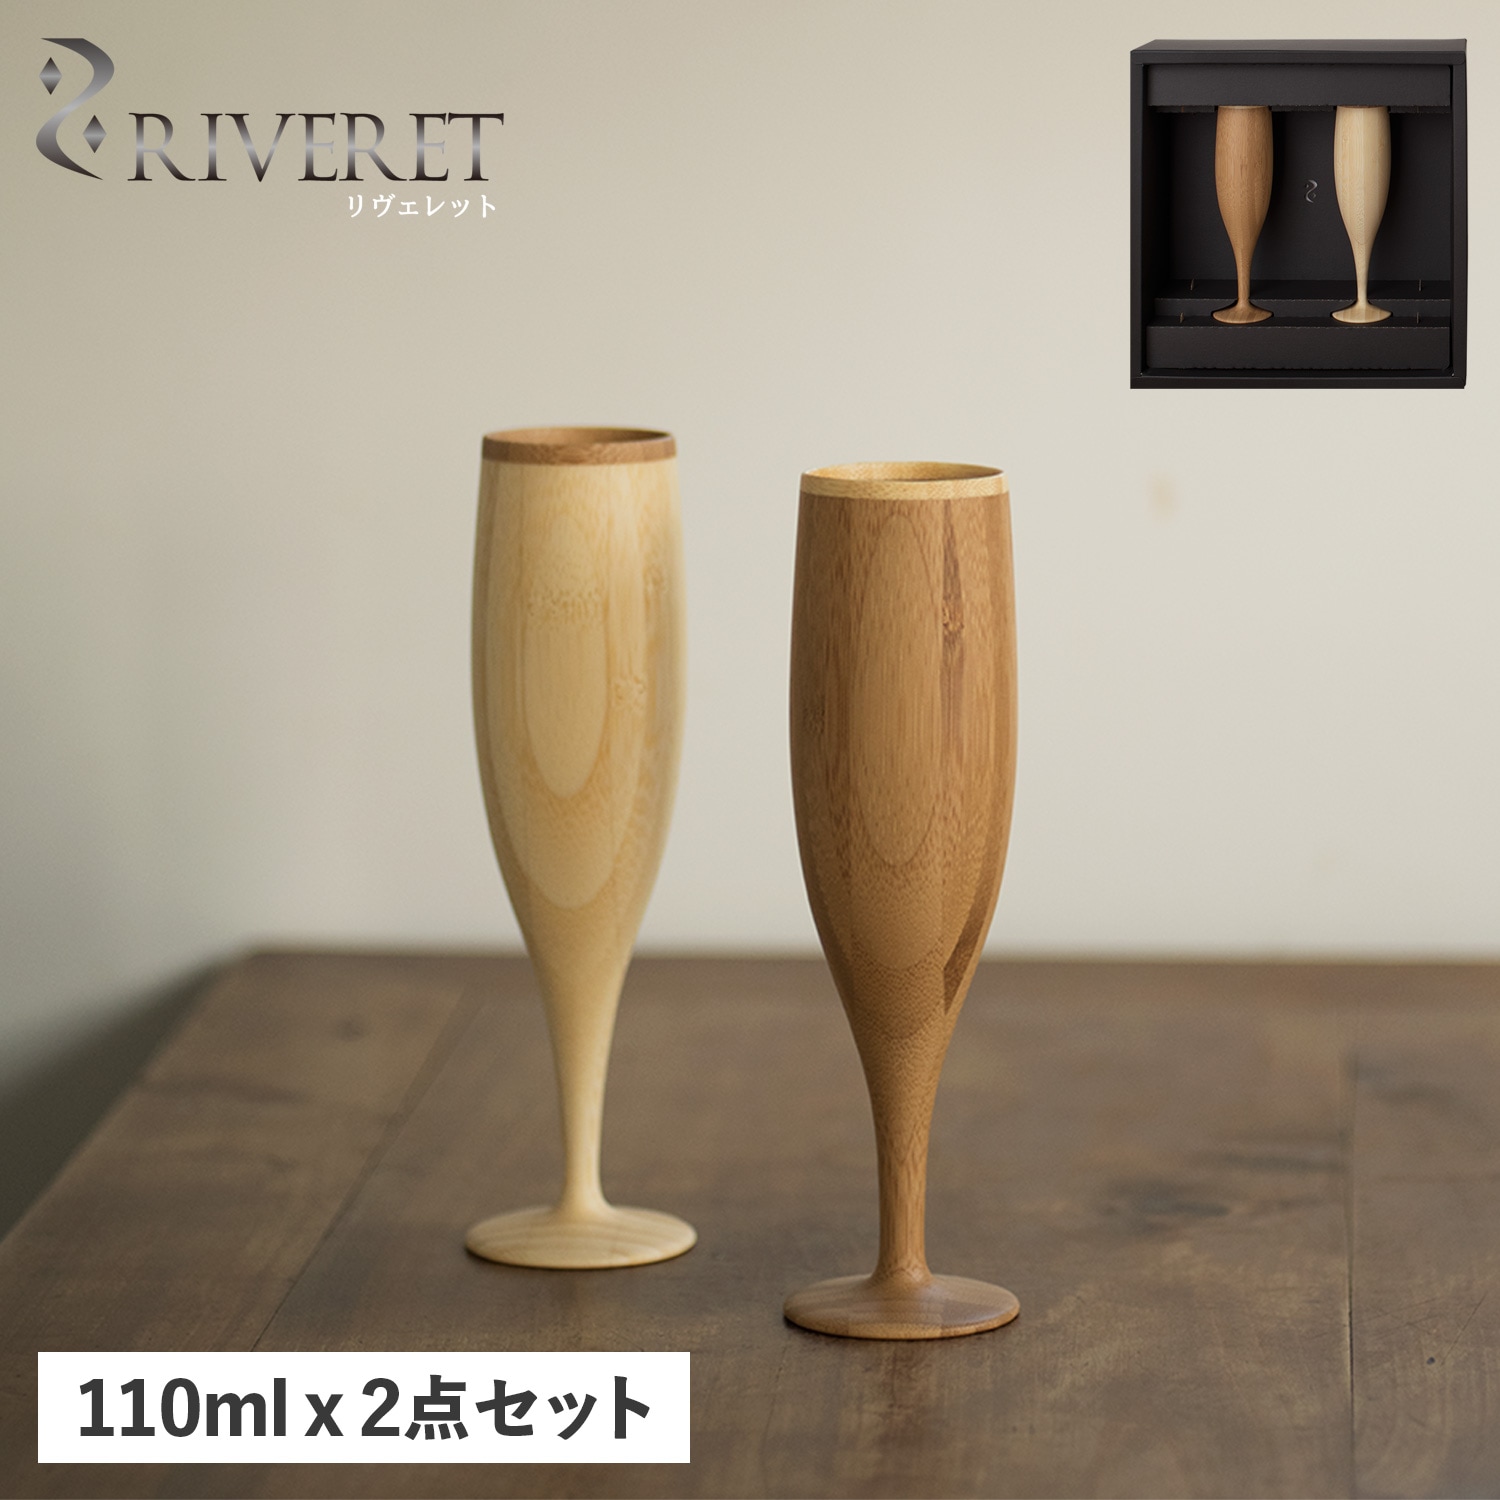 【名入れ無料】 2点セット フルート シャンパングラス グラス 天然素材 RV-107WB 食洗器対応 日本製 グラス